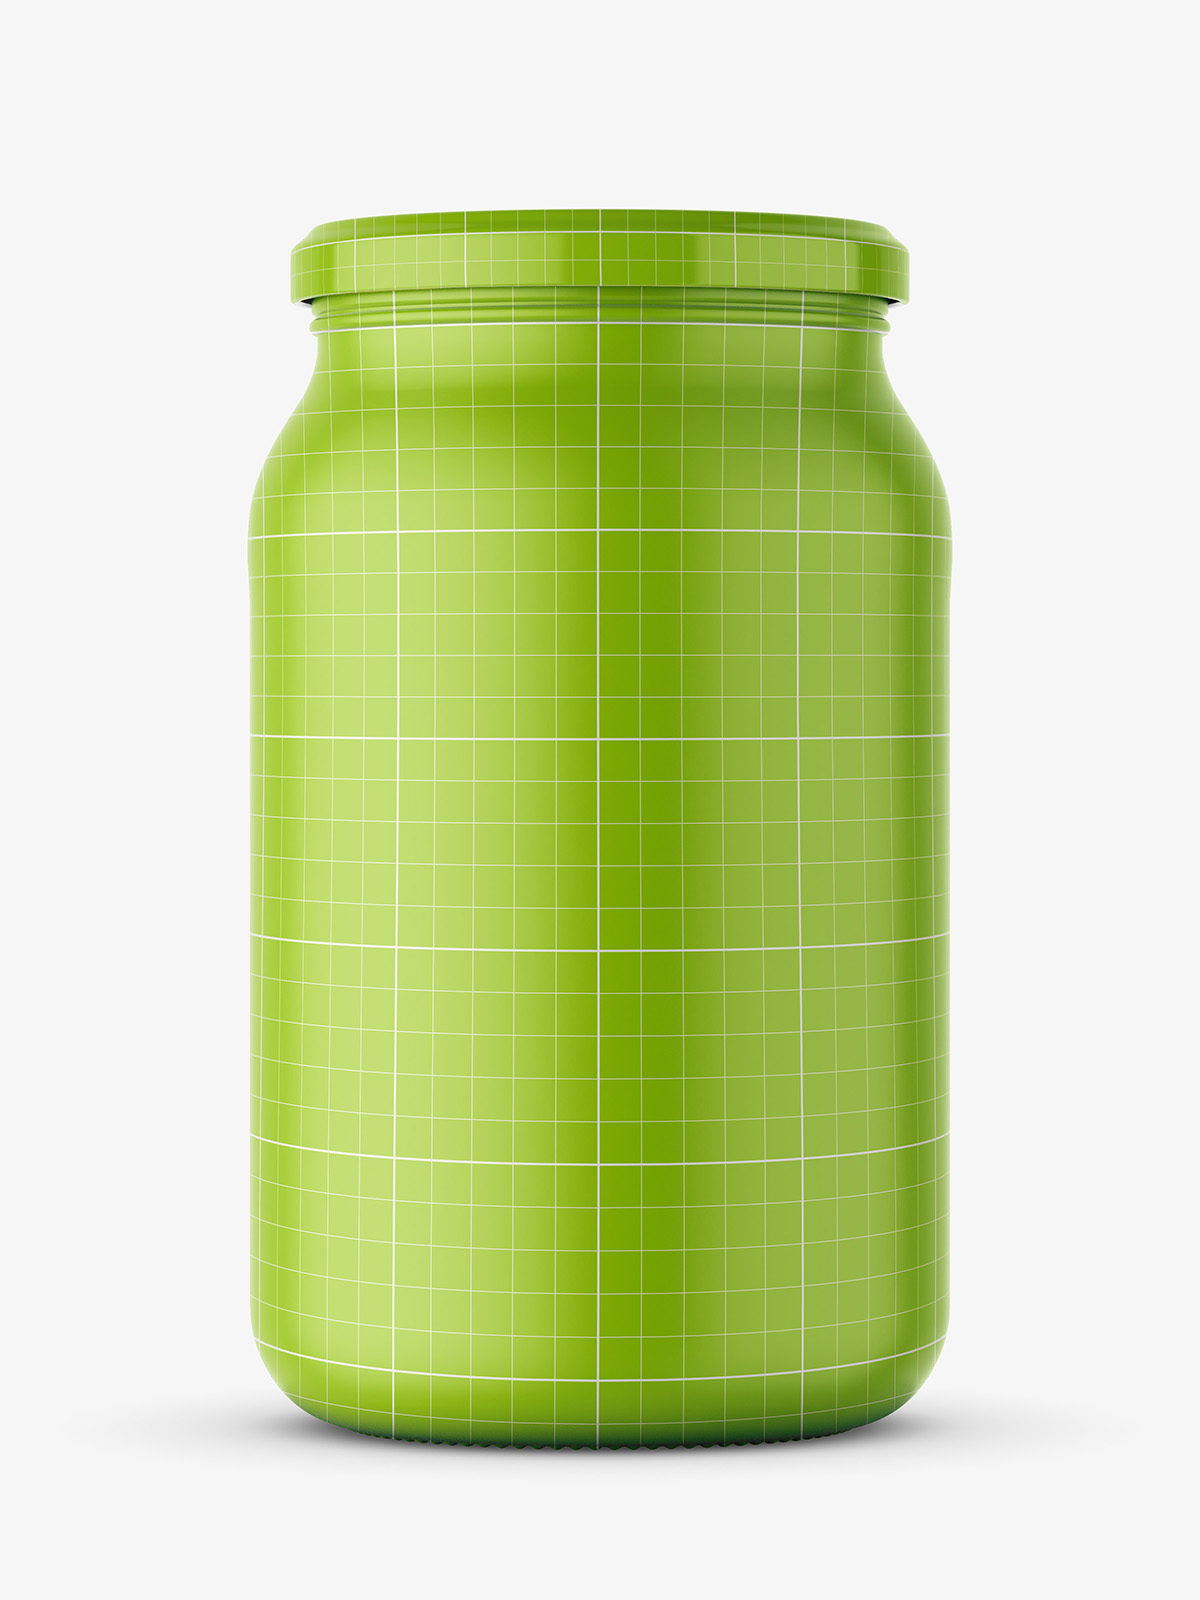 Download Large jar of olives mockup - Smarty Mockups